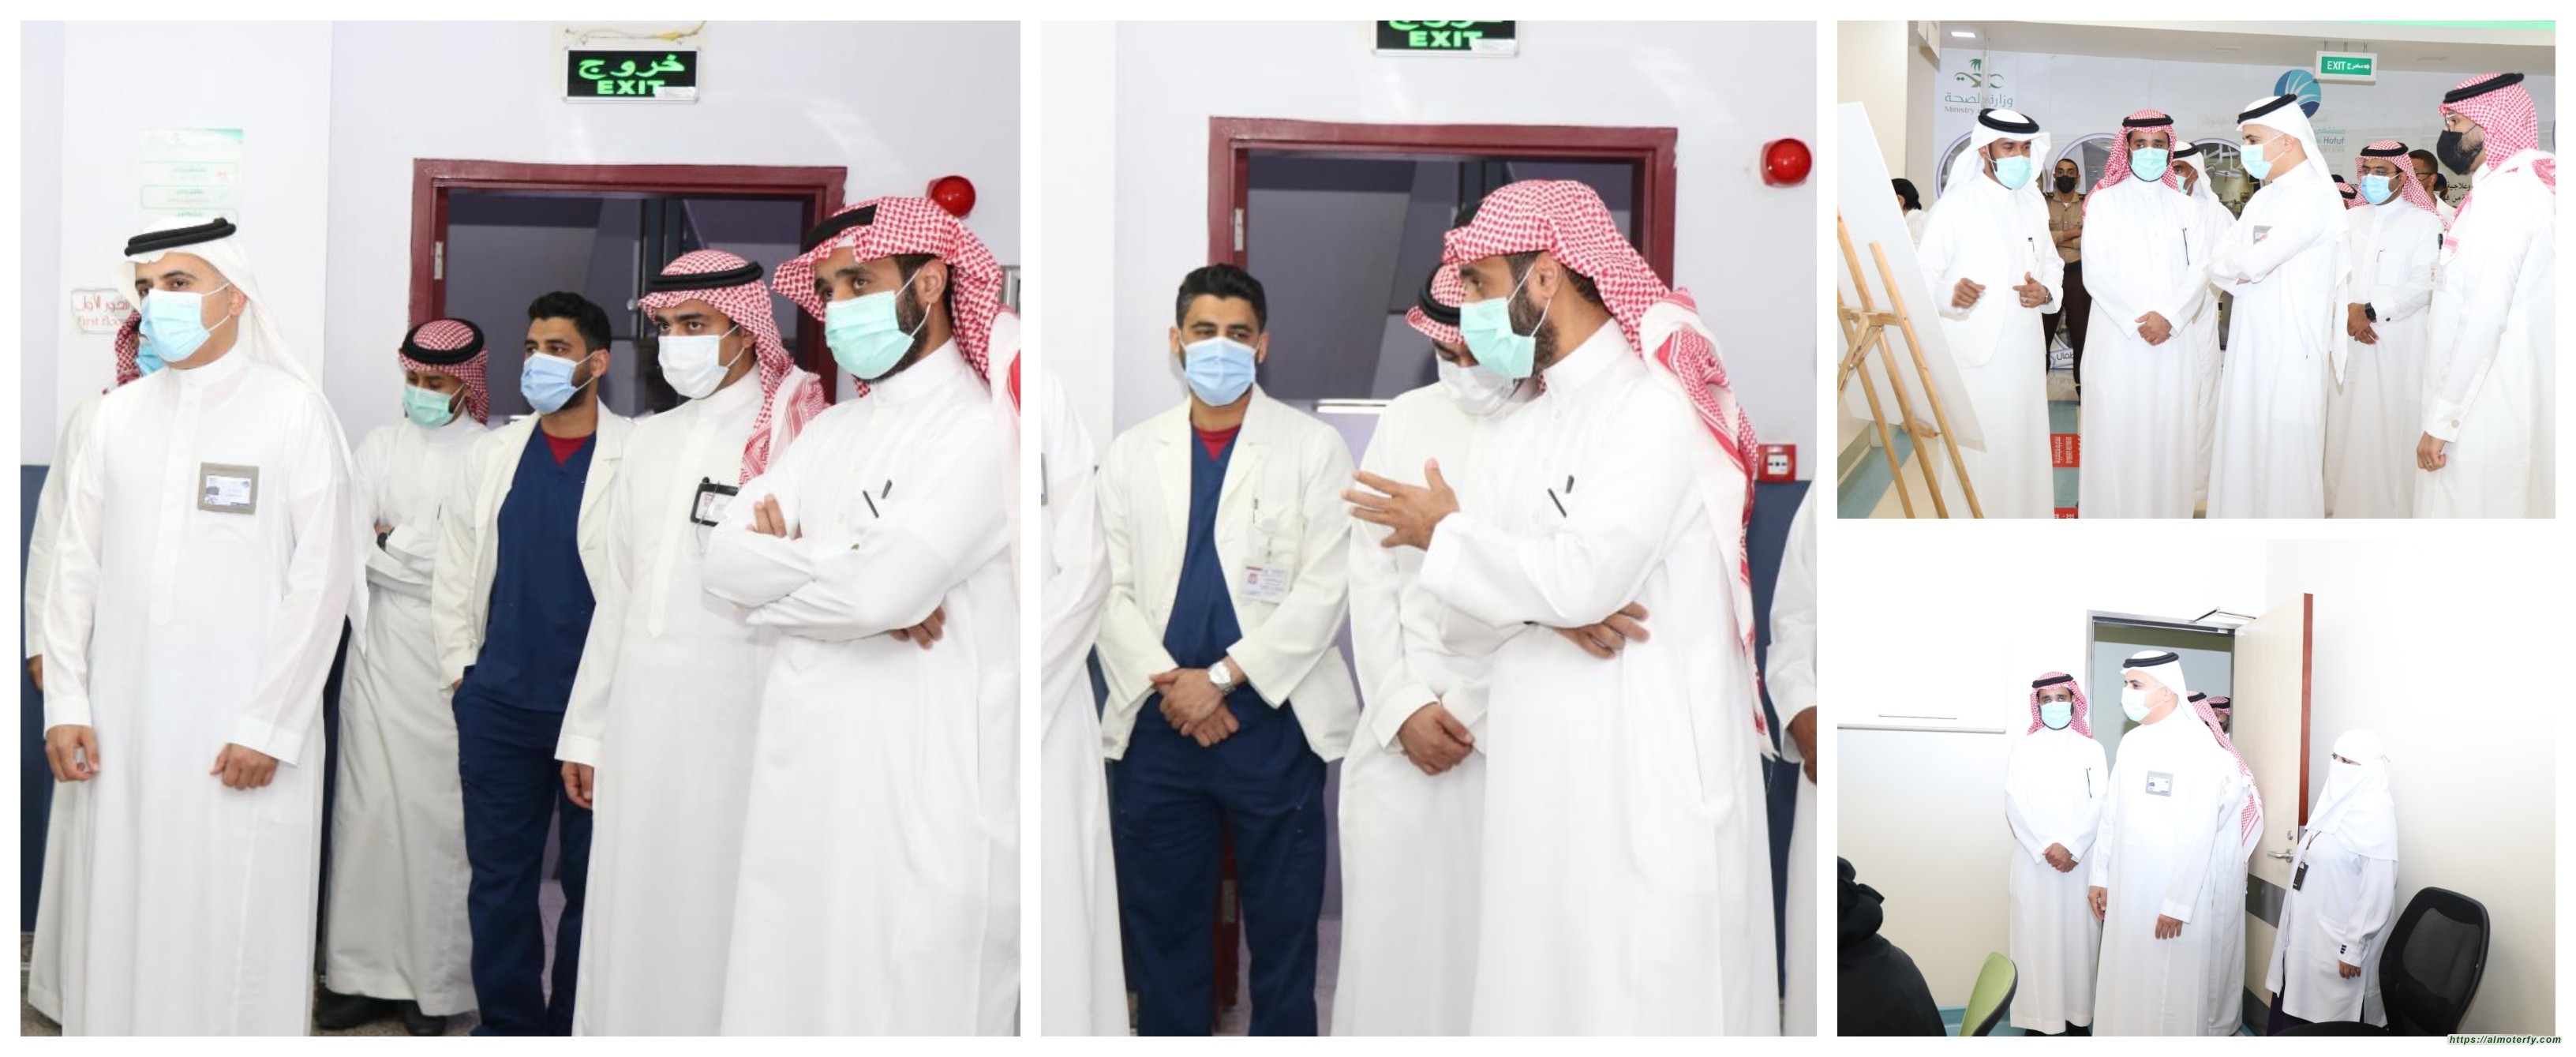 مستشفى الملك فهد بالهفوف يطلق مبادرتين لتشغيل العيادات والعمليات في الفترة المسائية